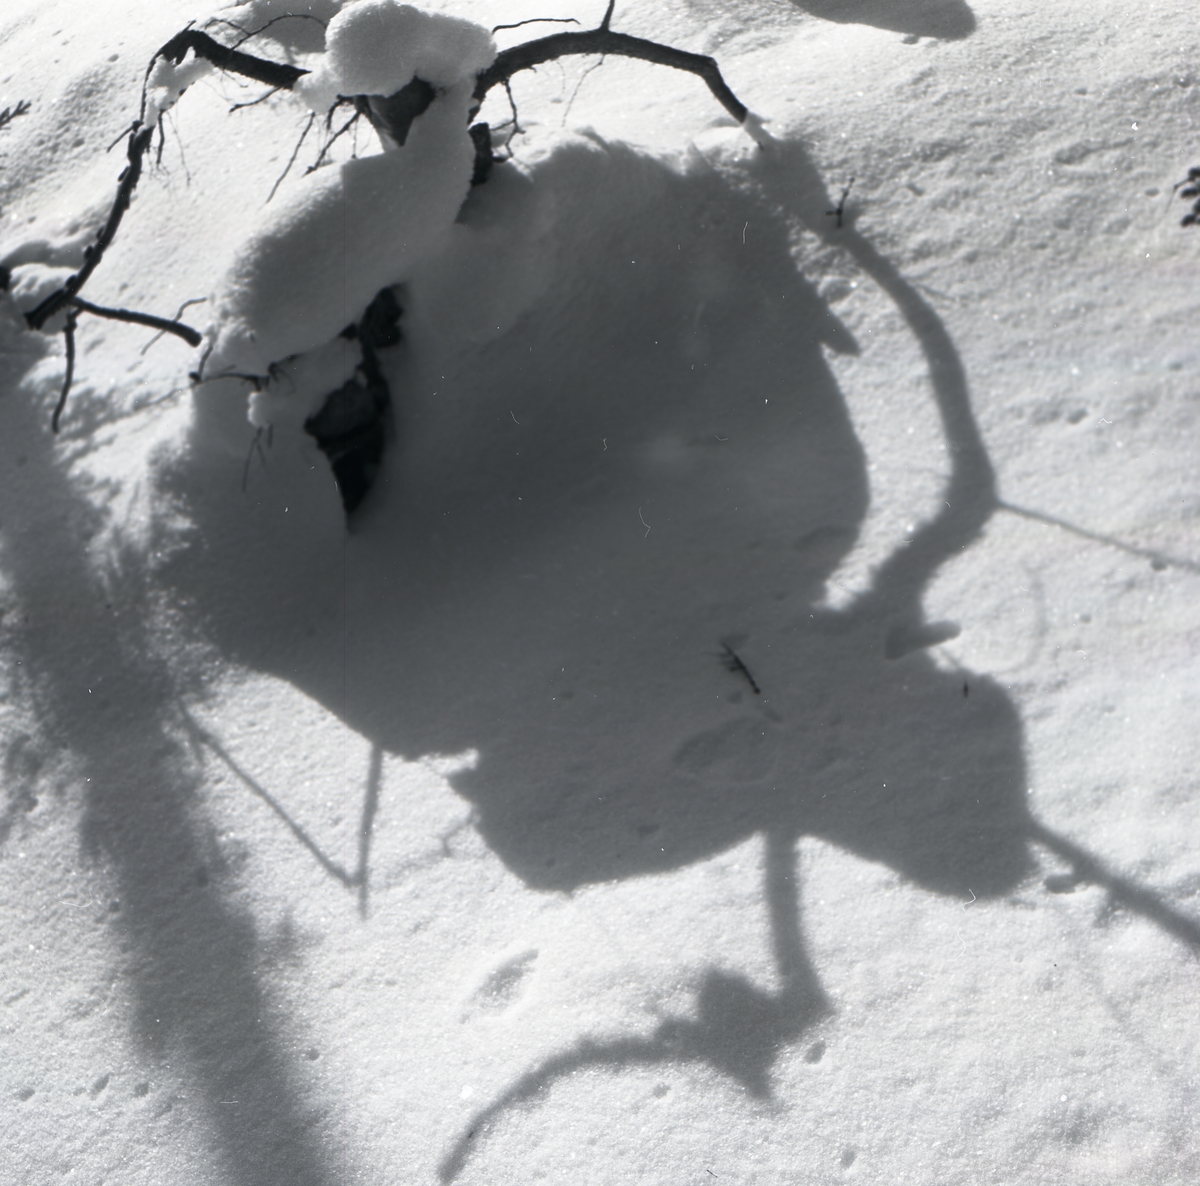 Skugga i form av ett "troll" på snö, 21 februari 1954.